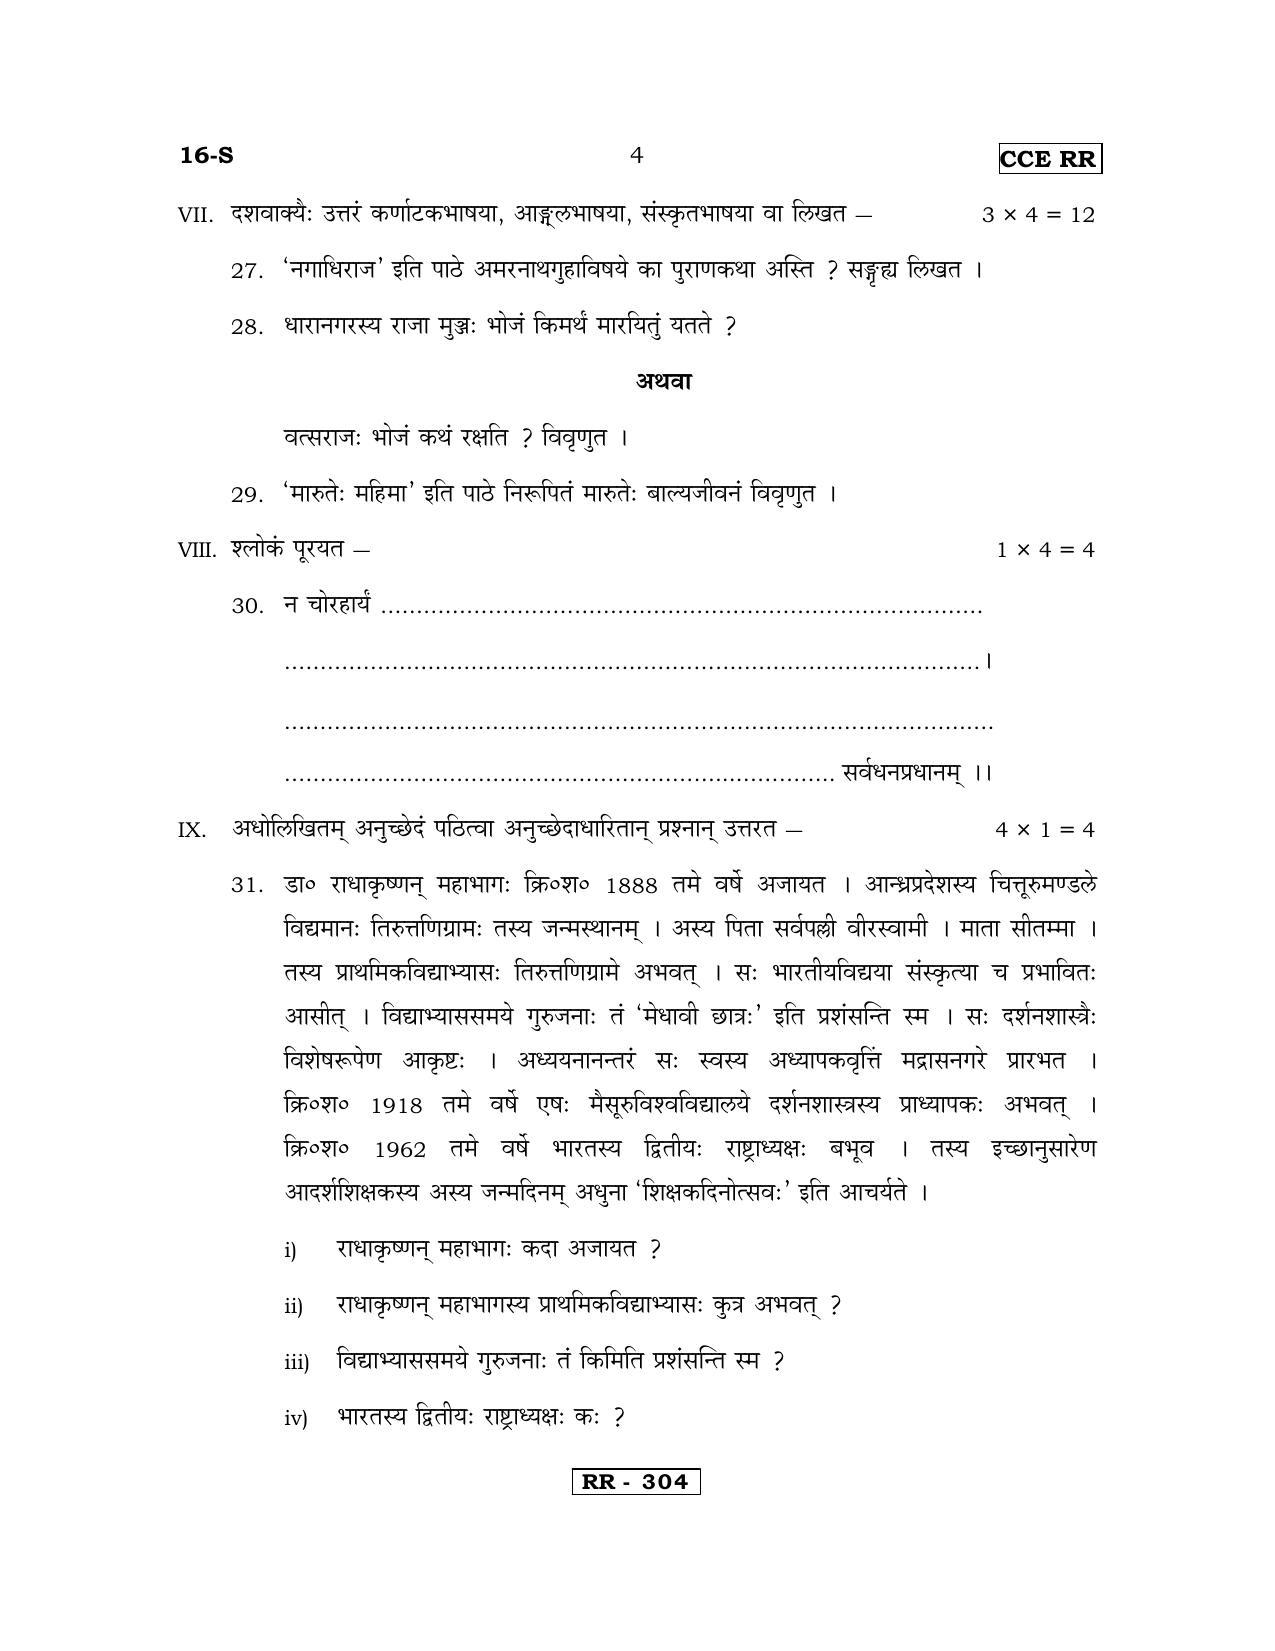 Karnataka SSLC Sanskrit - First Language - SANSKRIT (16-S-CCE RR UNREVISED_17) April 2018 Question Paper - Page 4